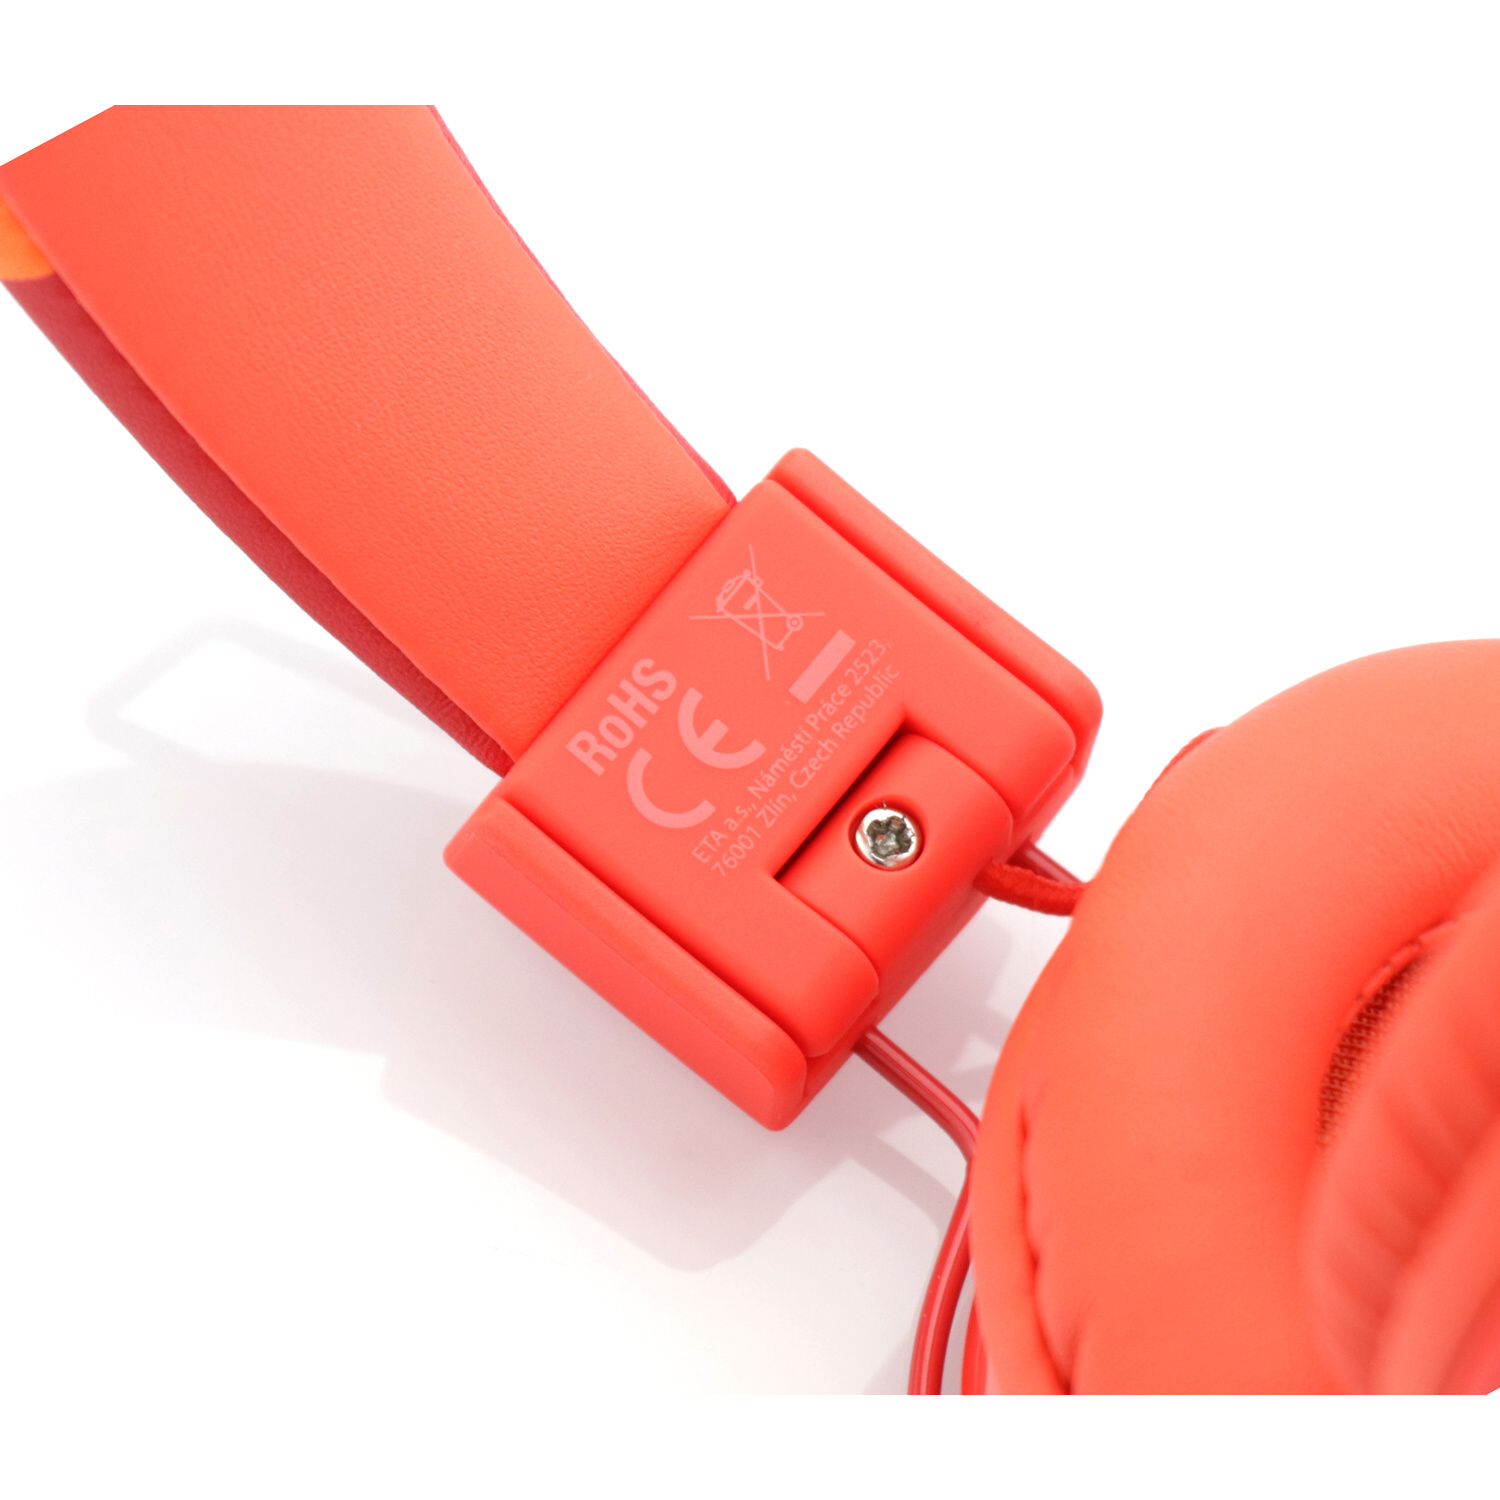 GOGEN DECKO SLECHY Over-ear Bluetooth Rot Kopfhörer R